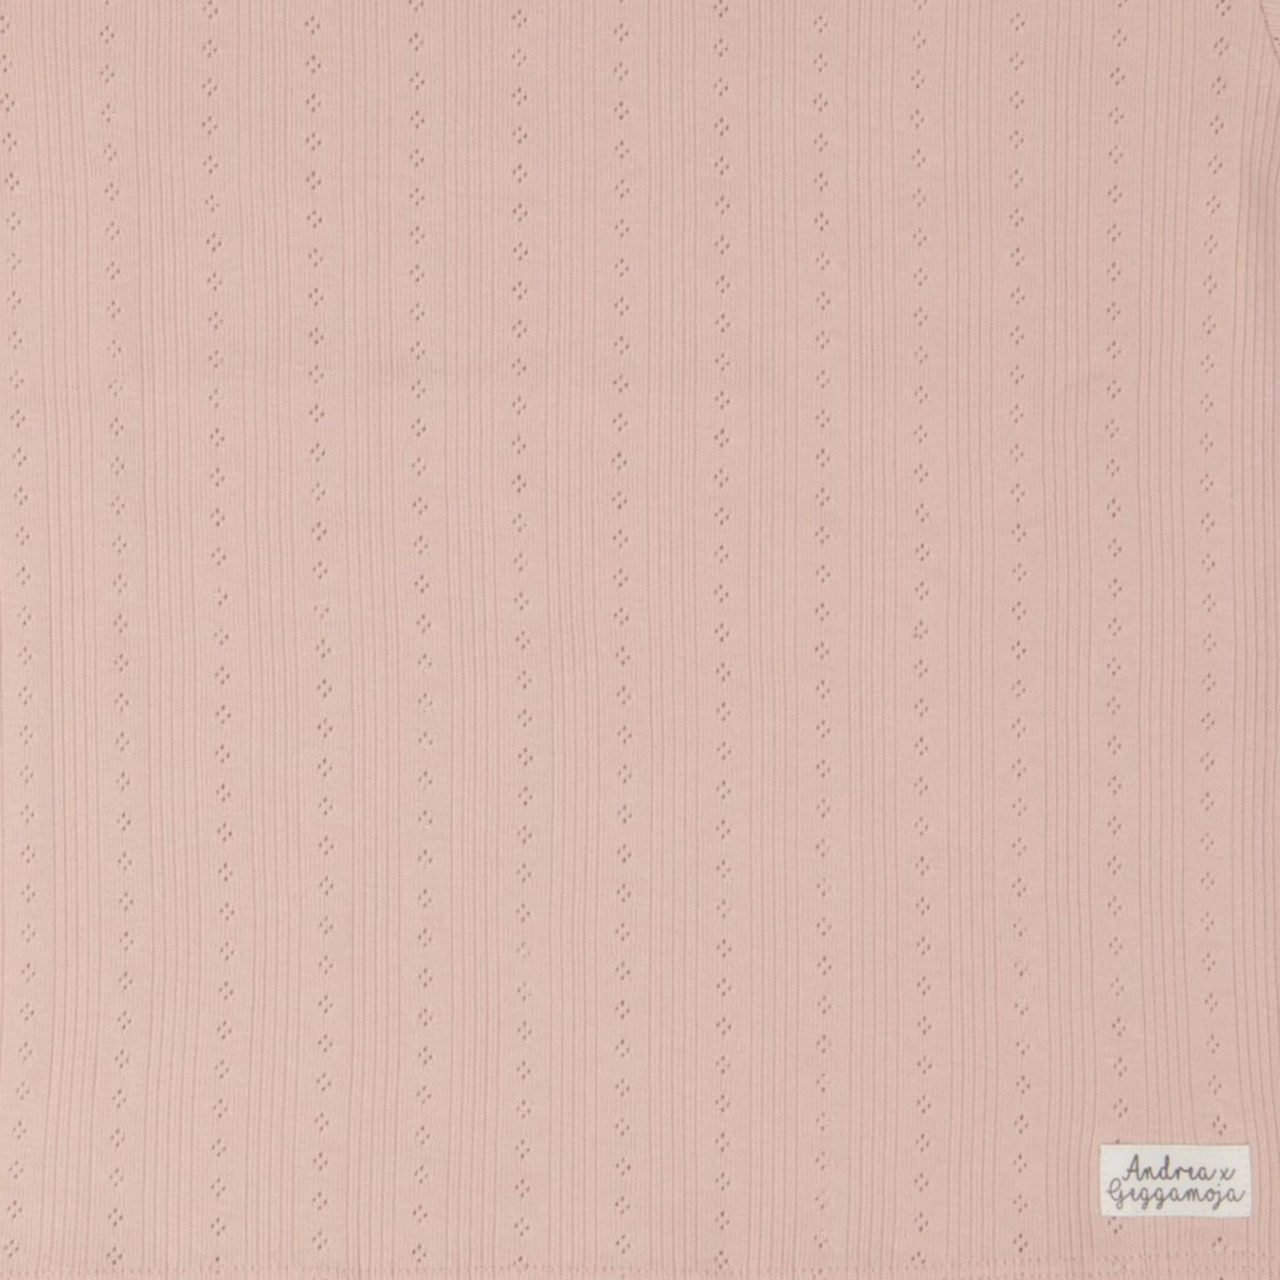 Lühikesed püksid roosa Rose  74/80